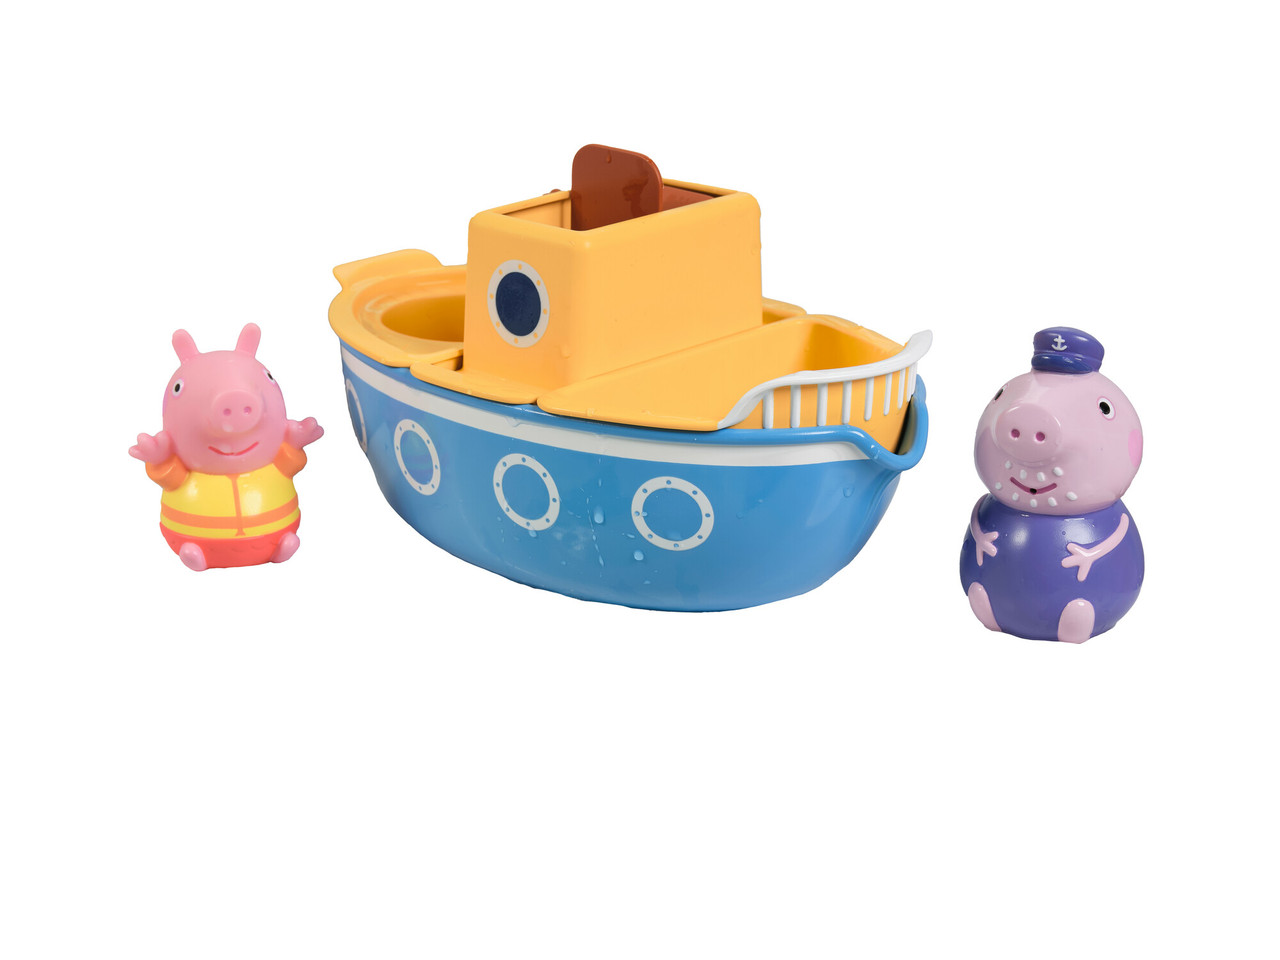  TOMY Toomies Peppa Pig - Juguetes de baño Peppa's Boat  Adventure - Incluye dos barcos y 5 figuras de juguete de Peppa Pig, juguetes  de baño para bebés y niños pequeños